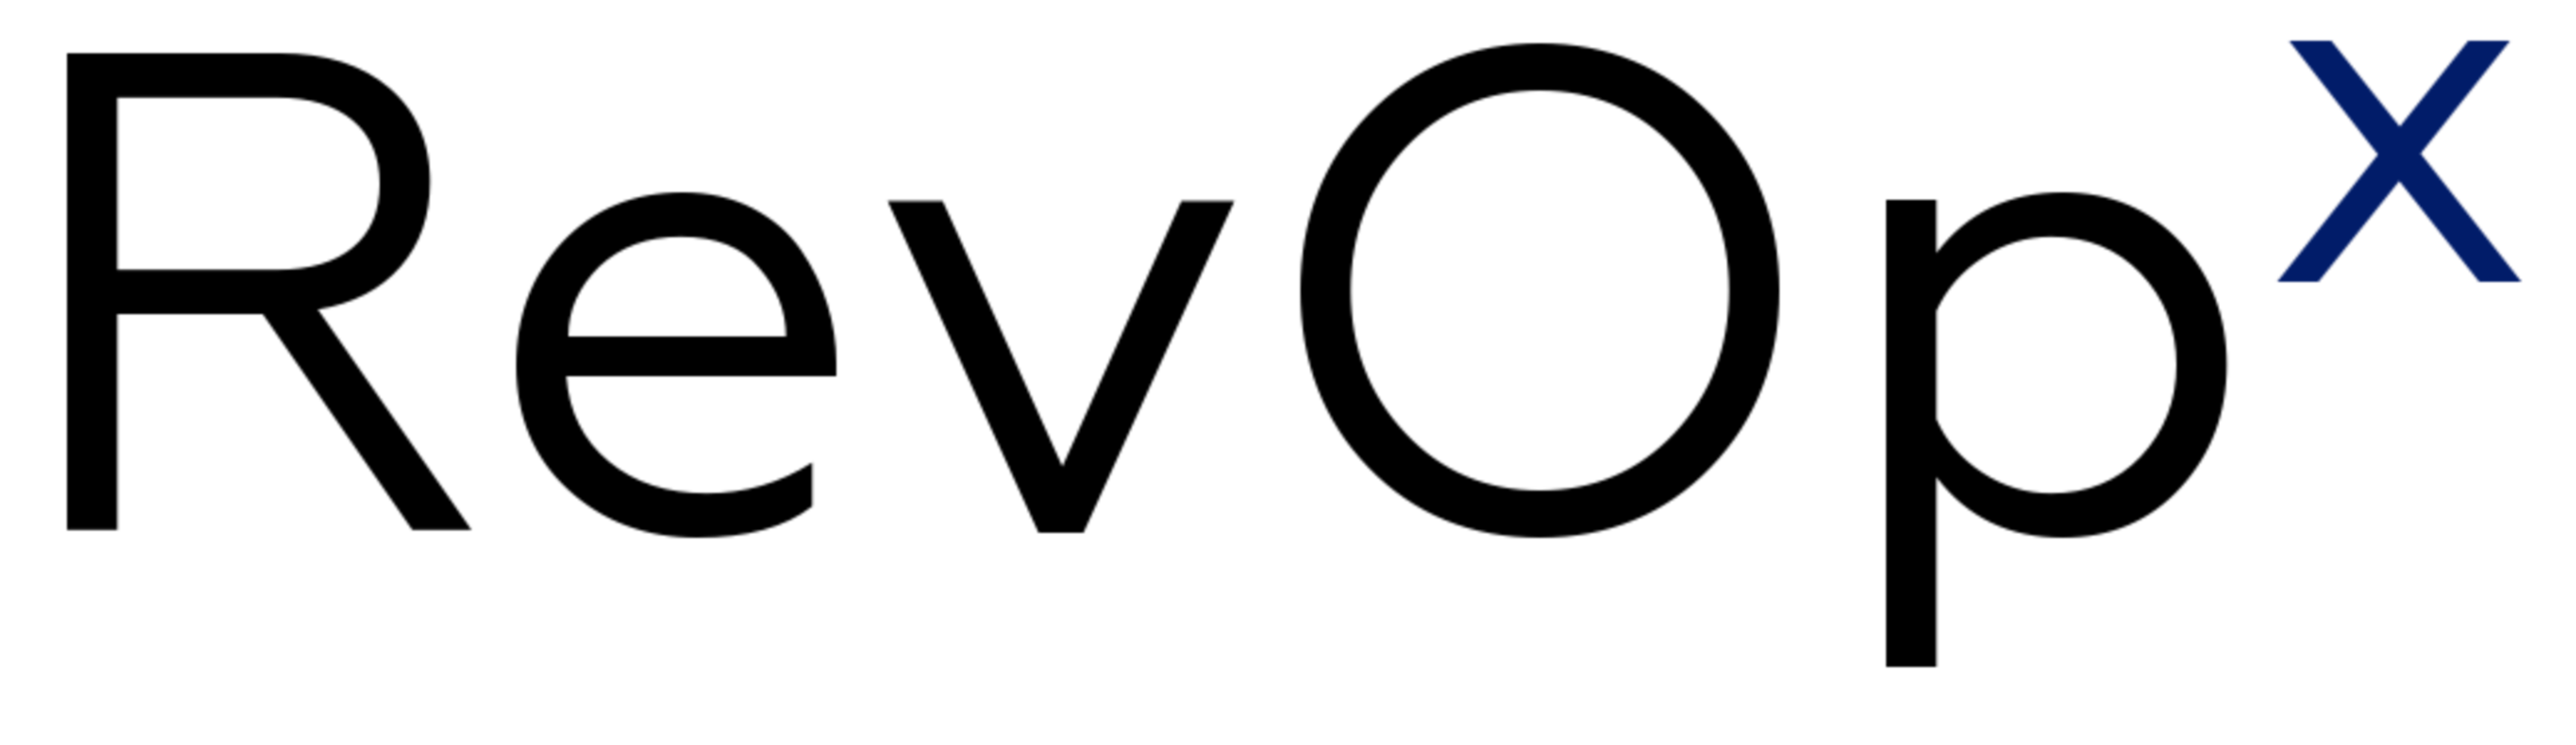 Revopx logo